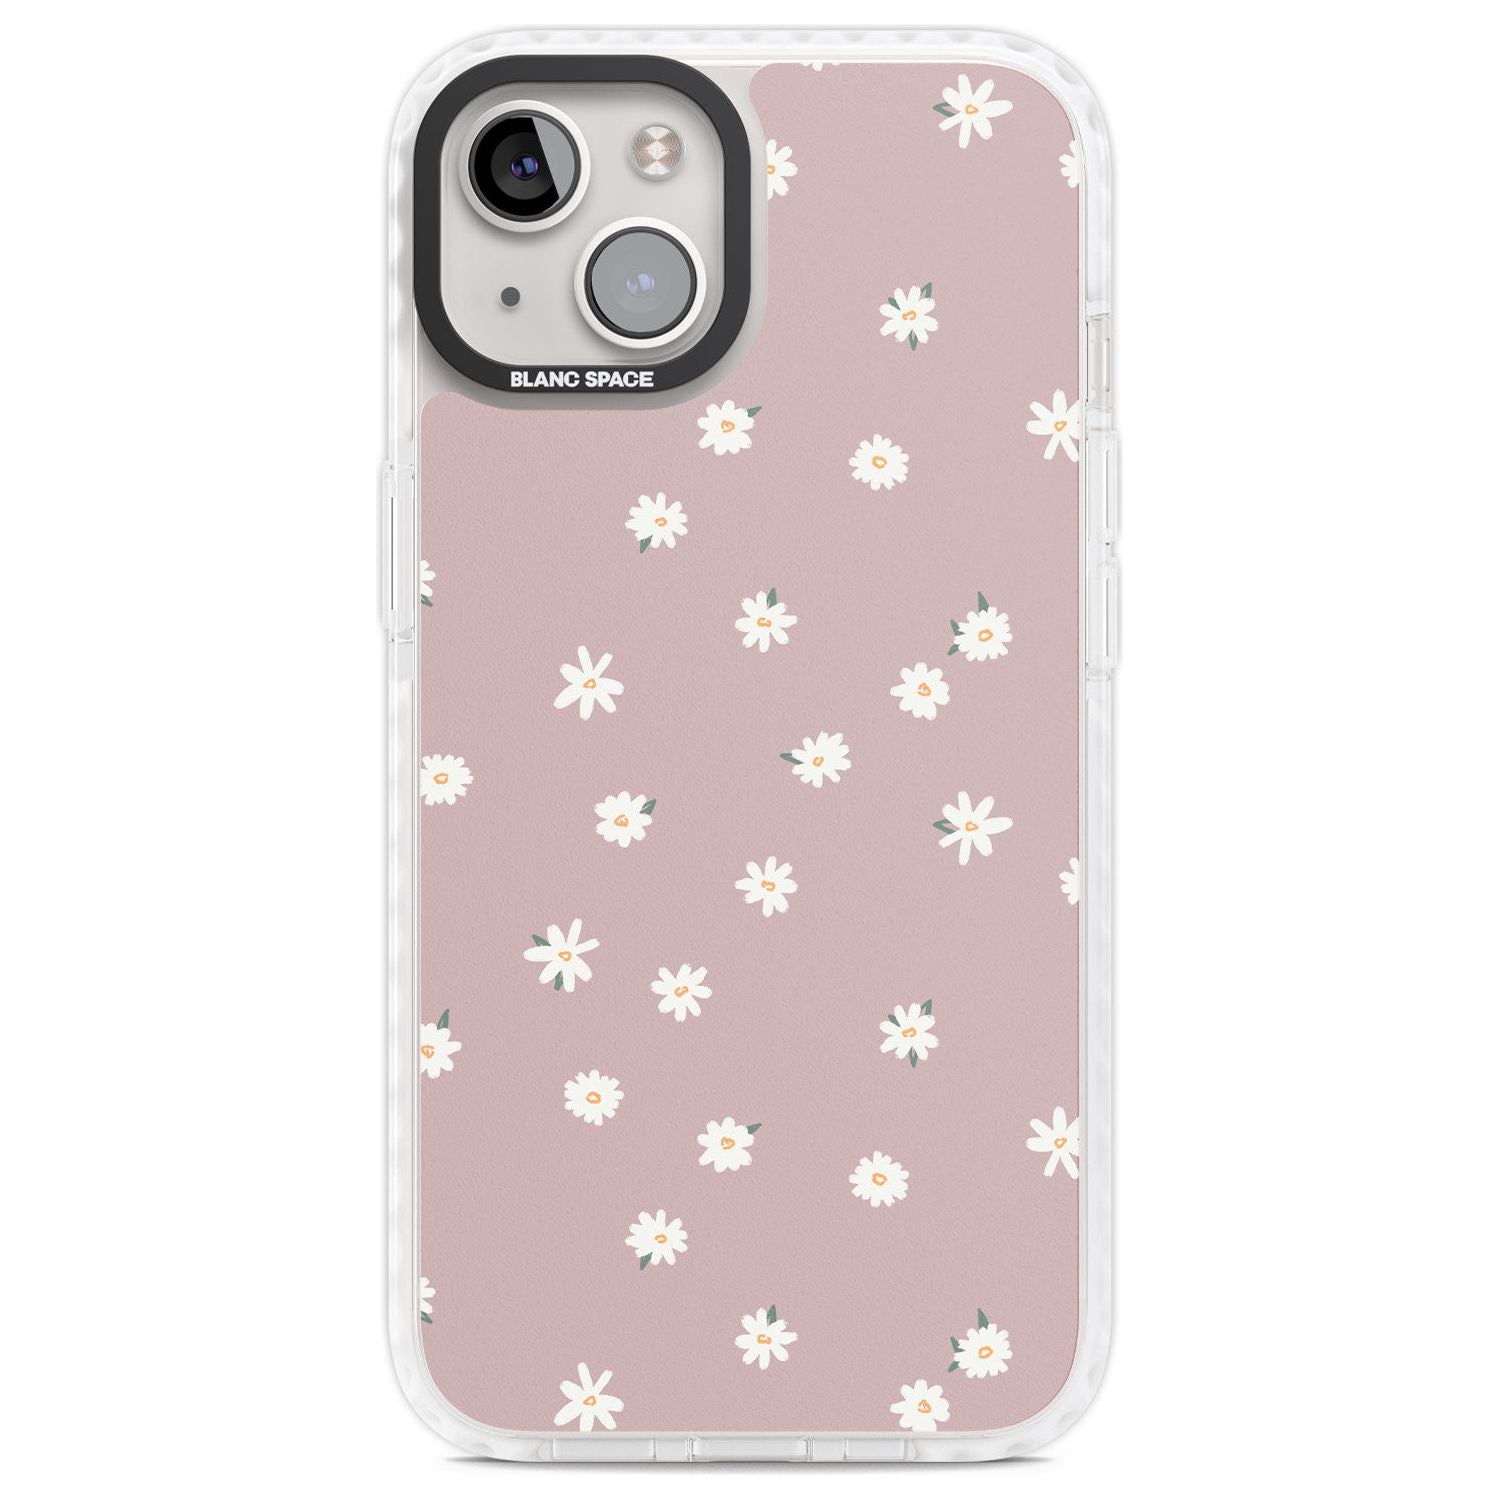 Dark Pink Cute Floral Design Phone Case iPhone 13 / Impact Case,iPhone 14 / Impact Case,iPhone 15 Plus / Impact Case,iPhone 15 / Impact Case Blanc Space